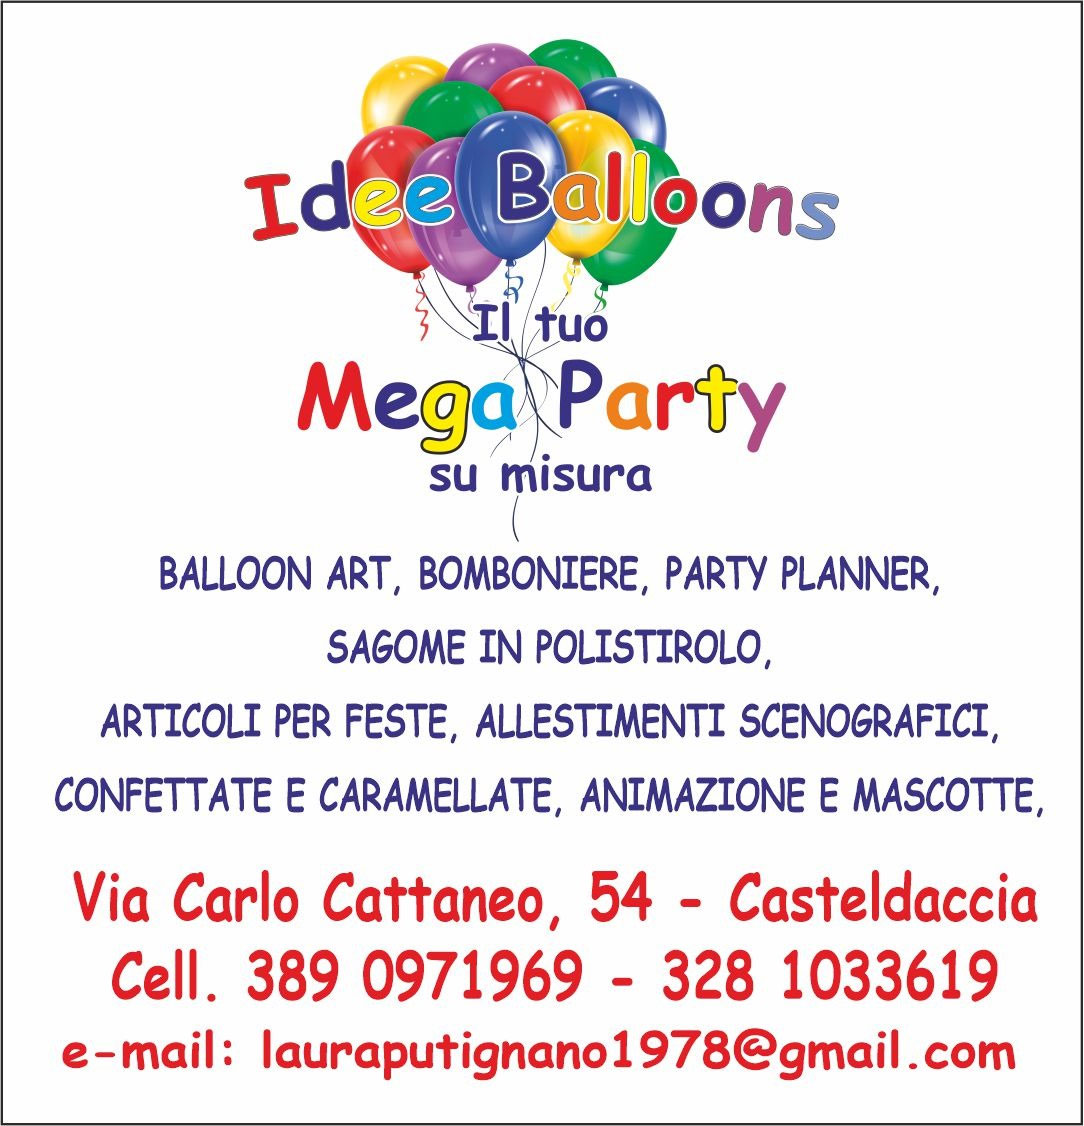 Idee Ballooons Mega Party